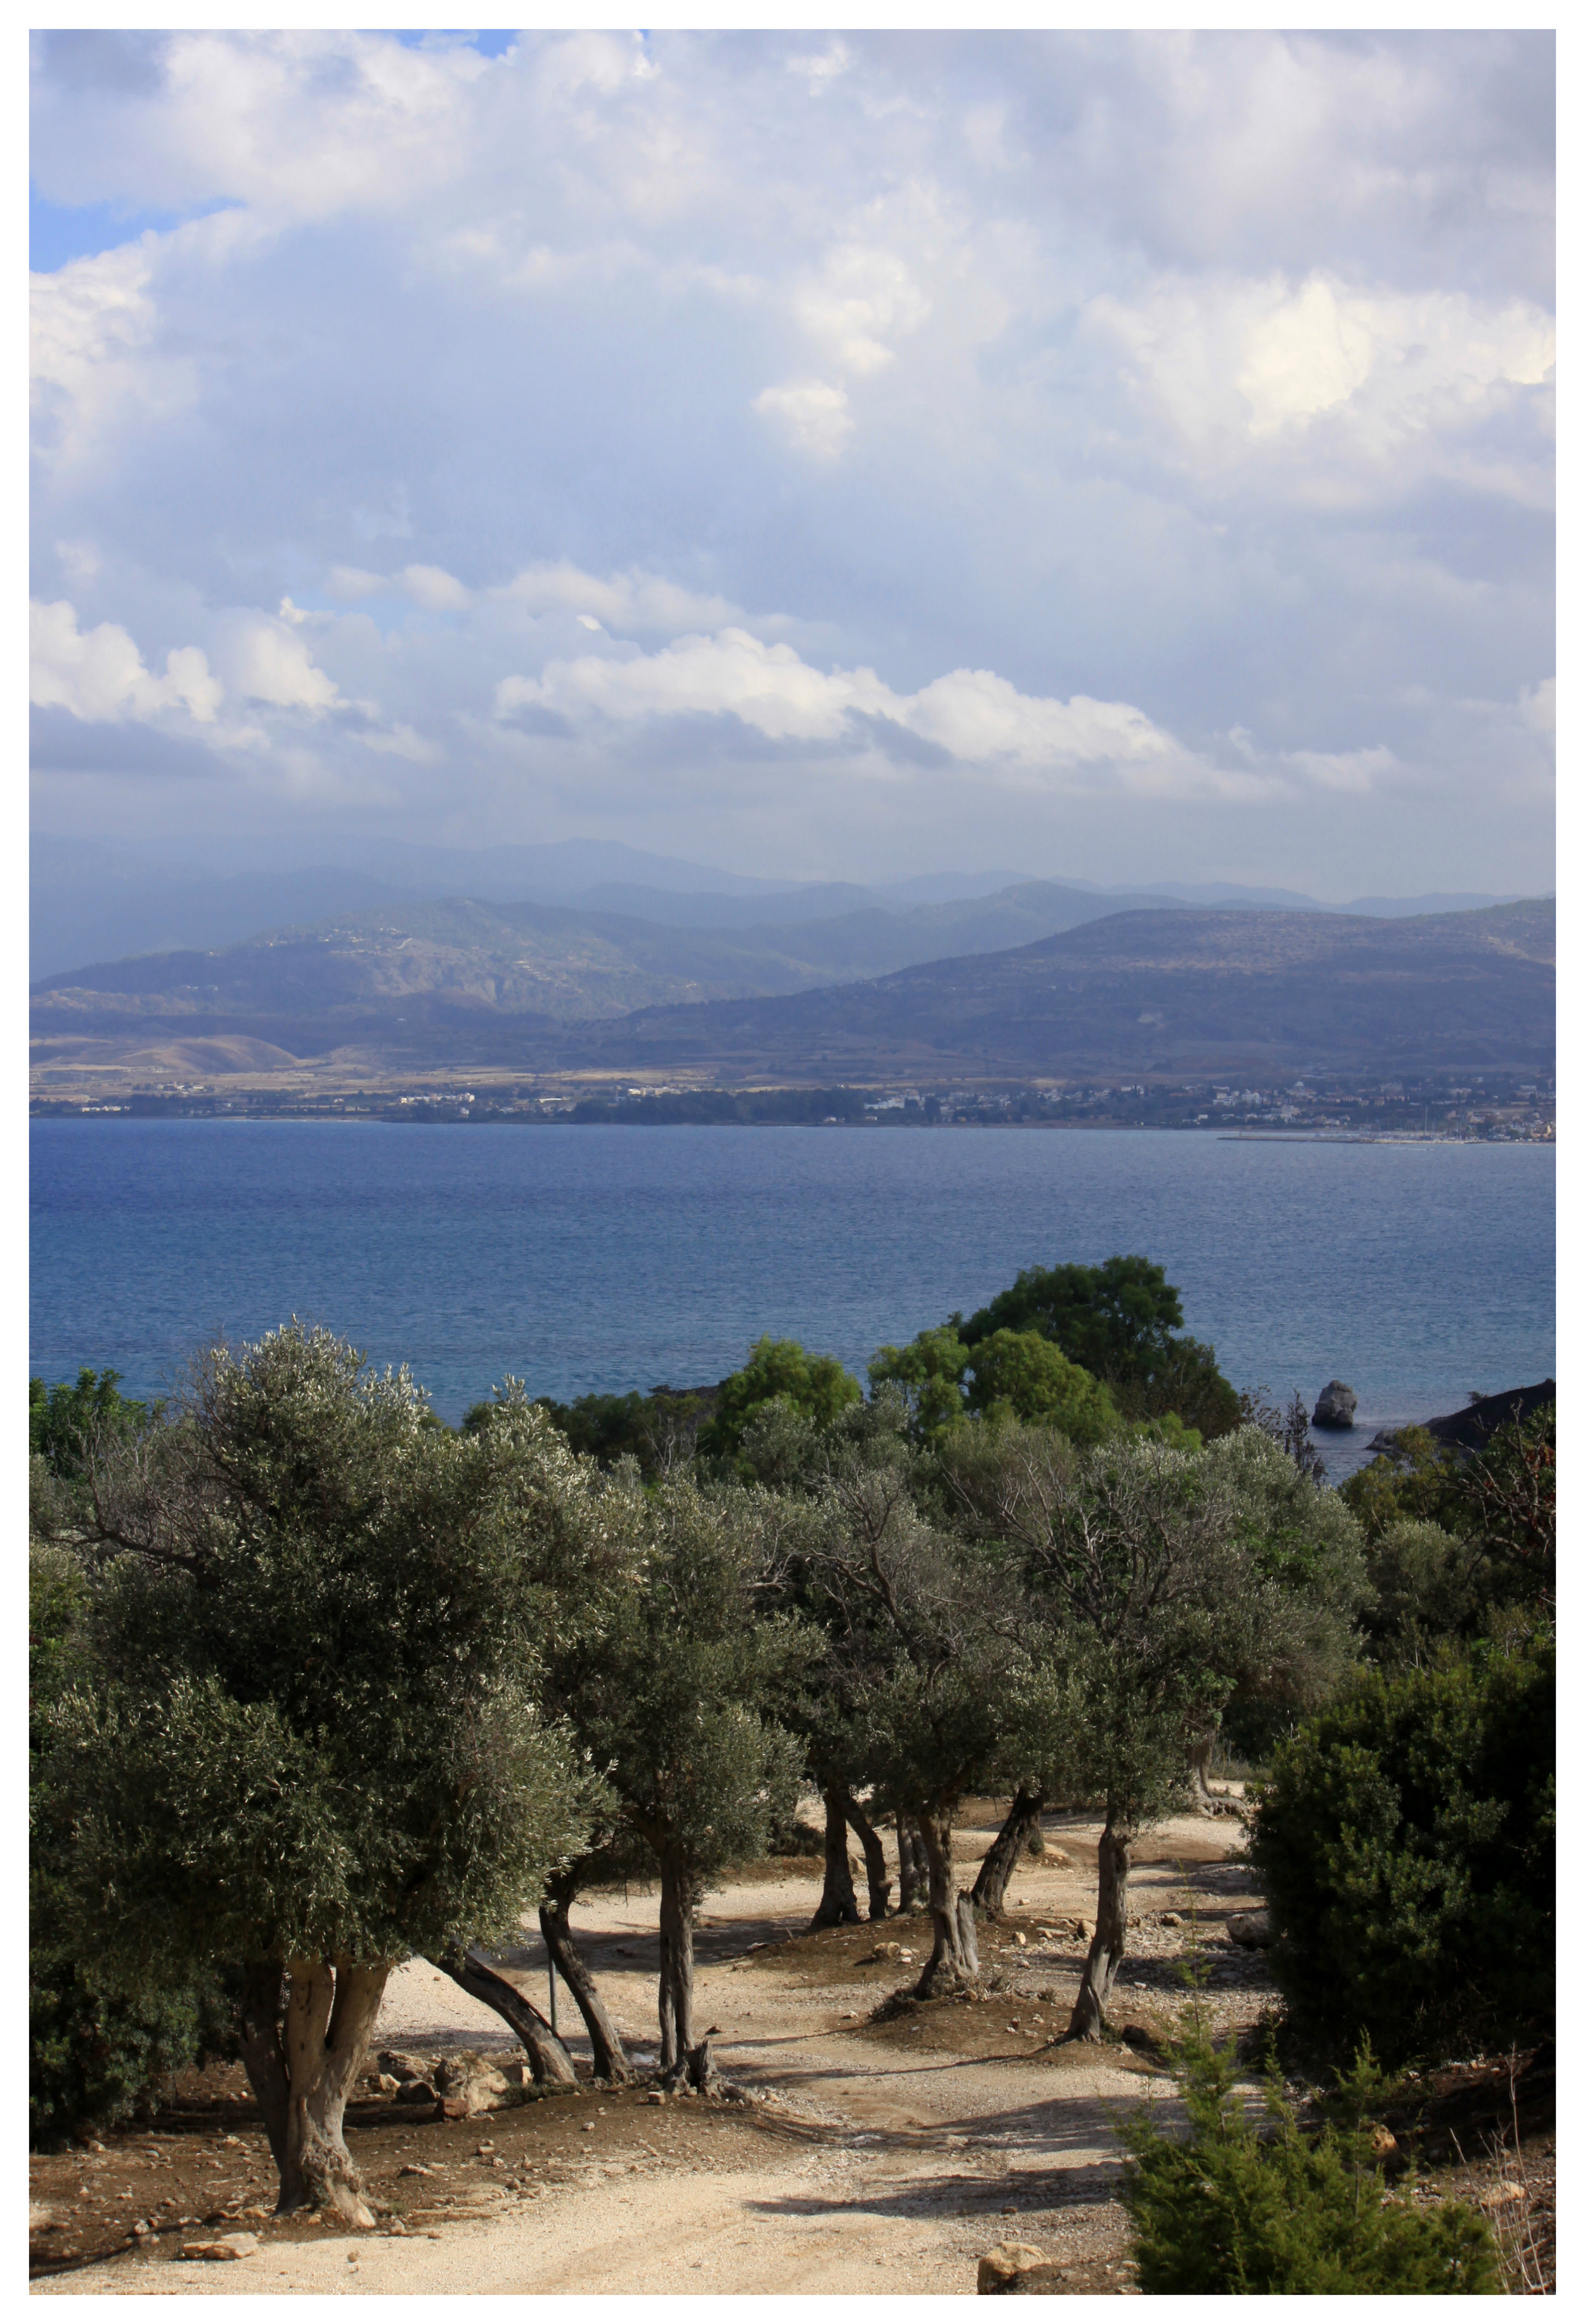 cyprus coastline 2.jpg